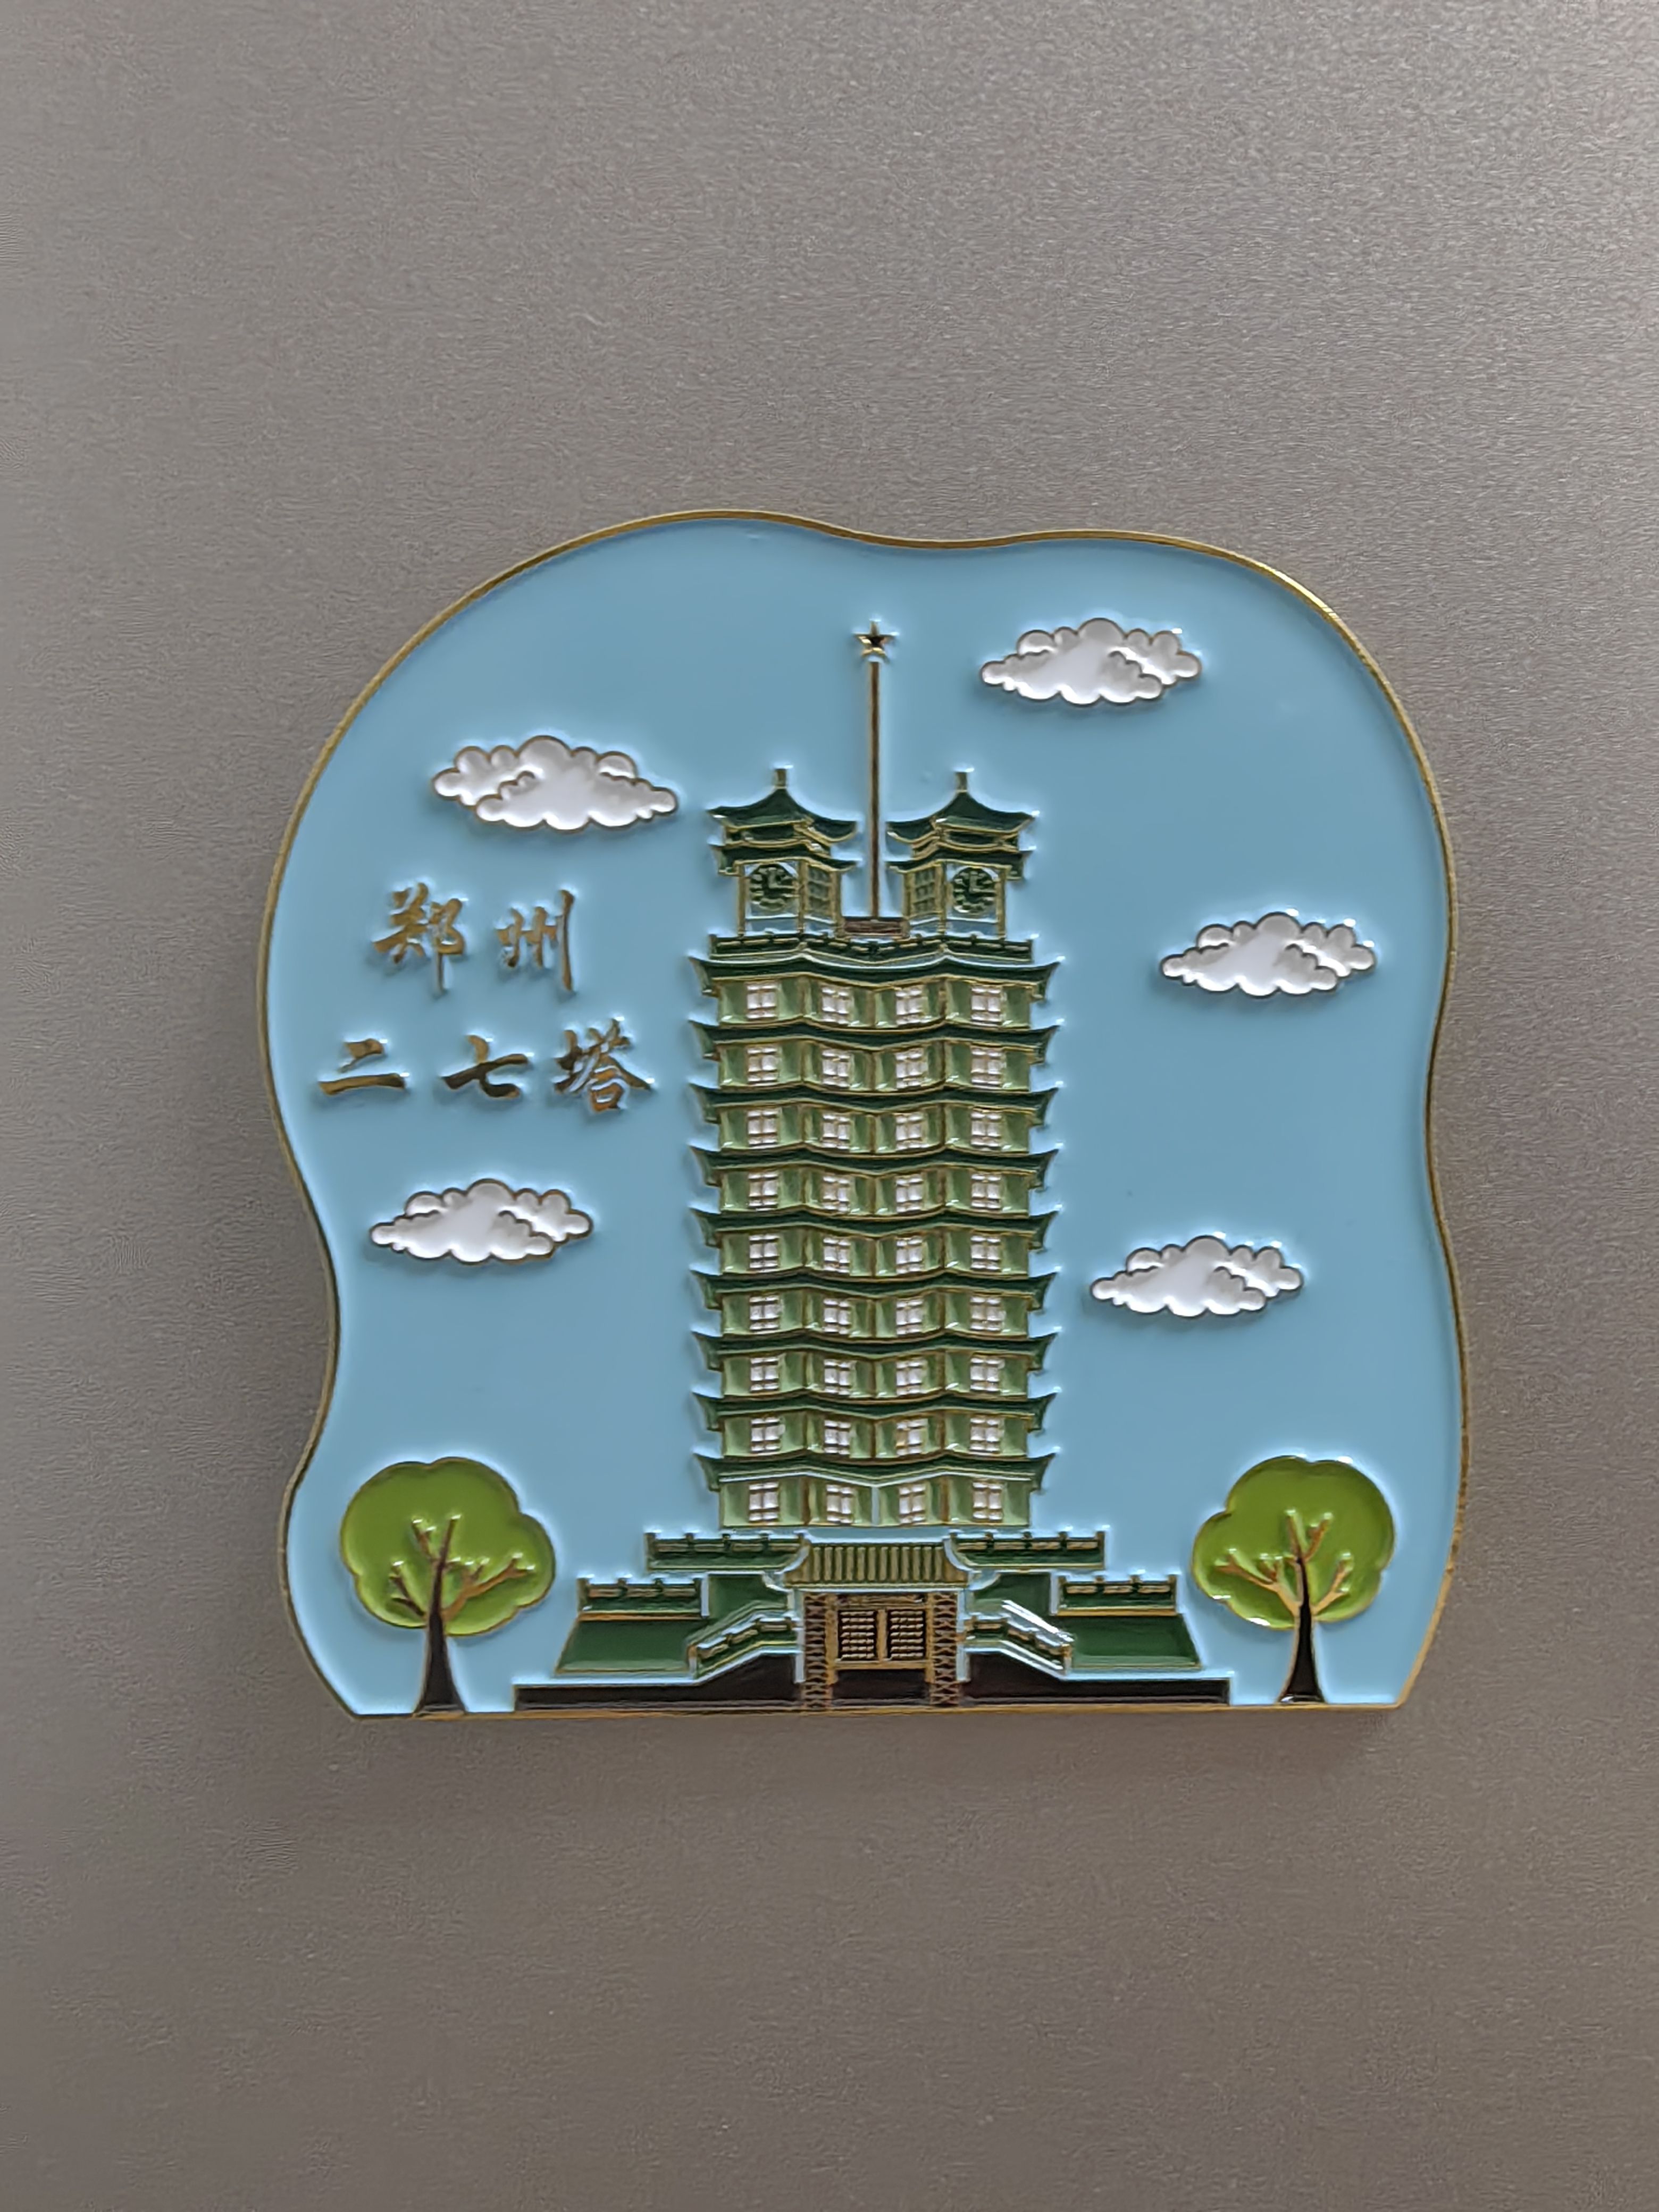 河南郑州旅游景点冰箱贴二七纪念塔文创纪念品金属烤漆磁吸